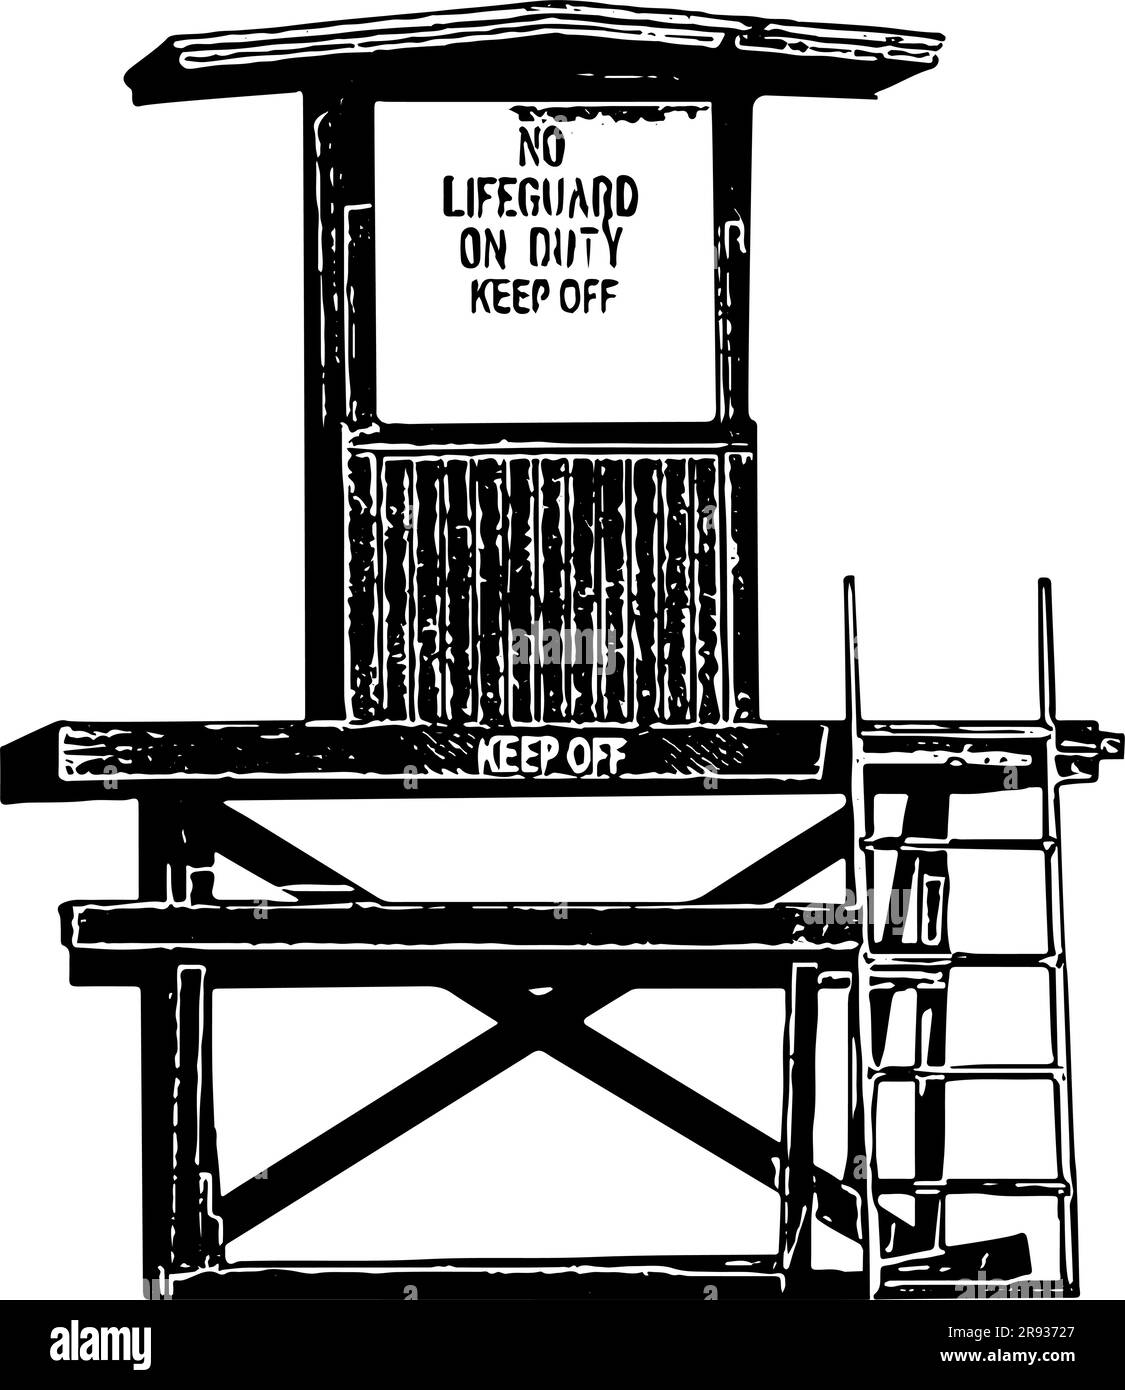 Station de secouriste sans sauveteur en service, illustration de l'enseigne de garde à l'écart en noir, isolée Illustration de Vecteur